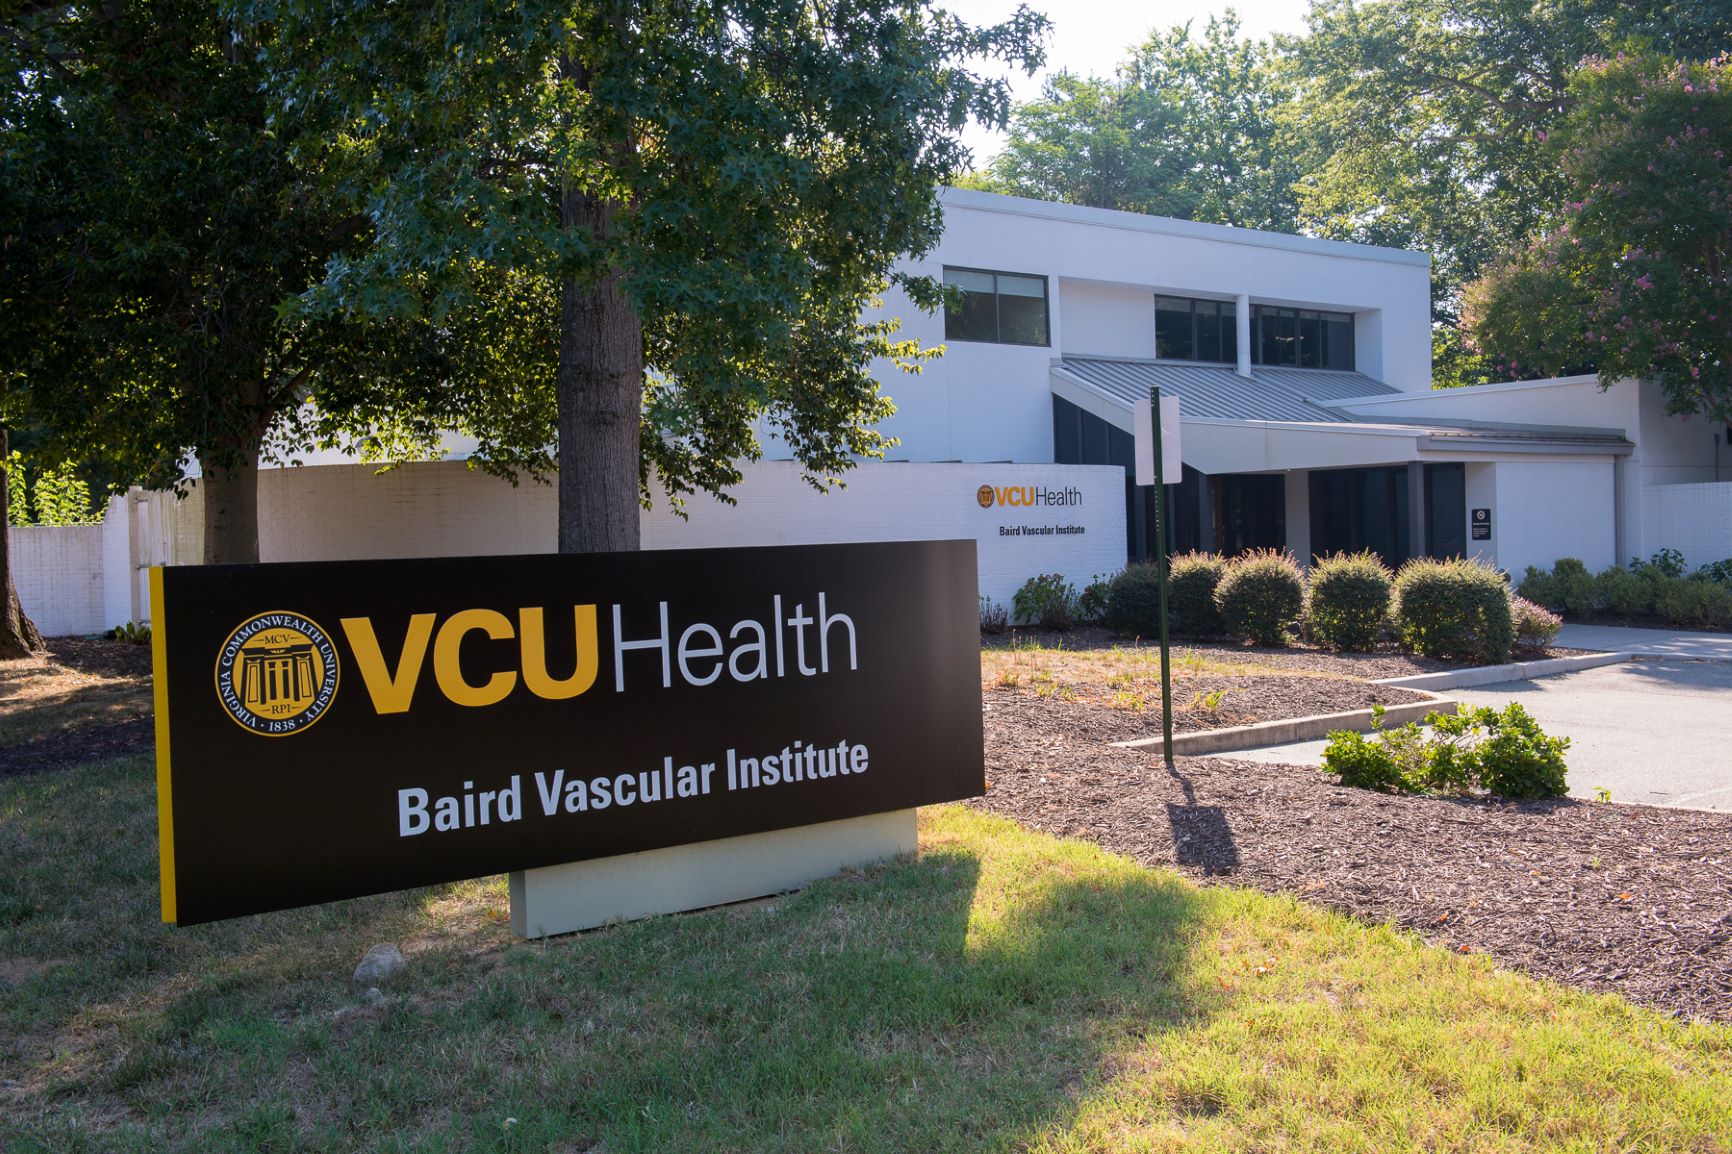 VCU Health's Baird Vascular Institute